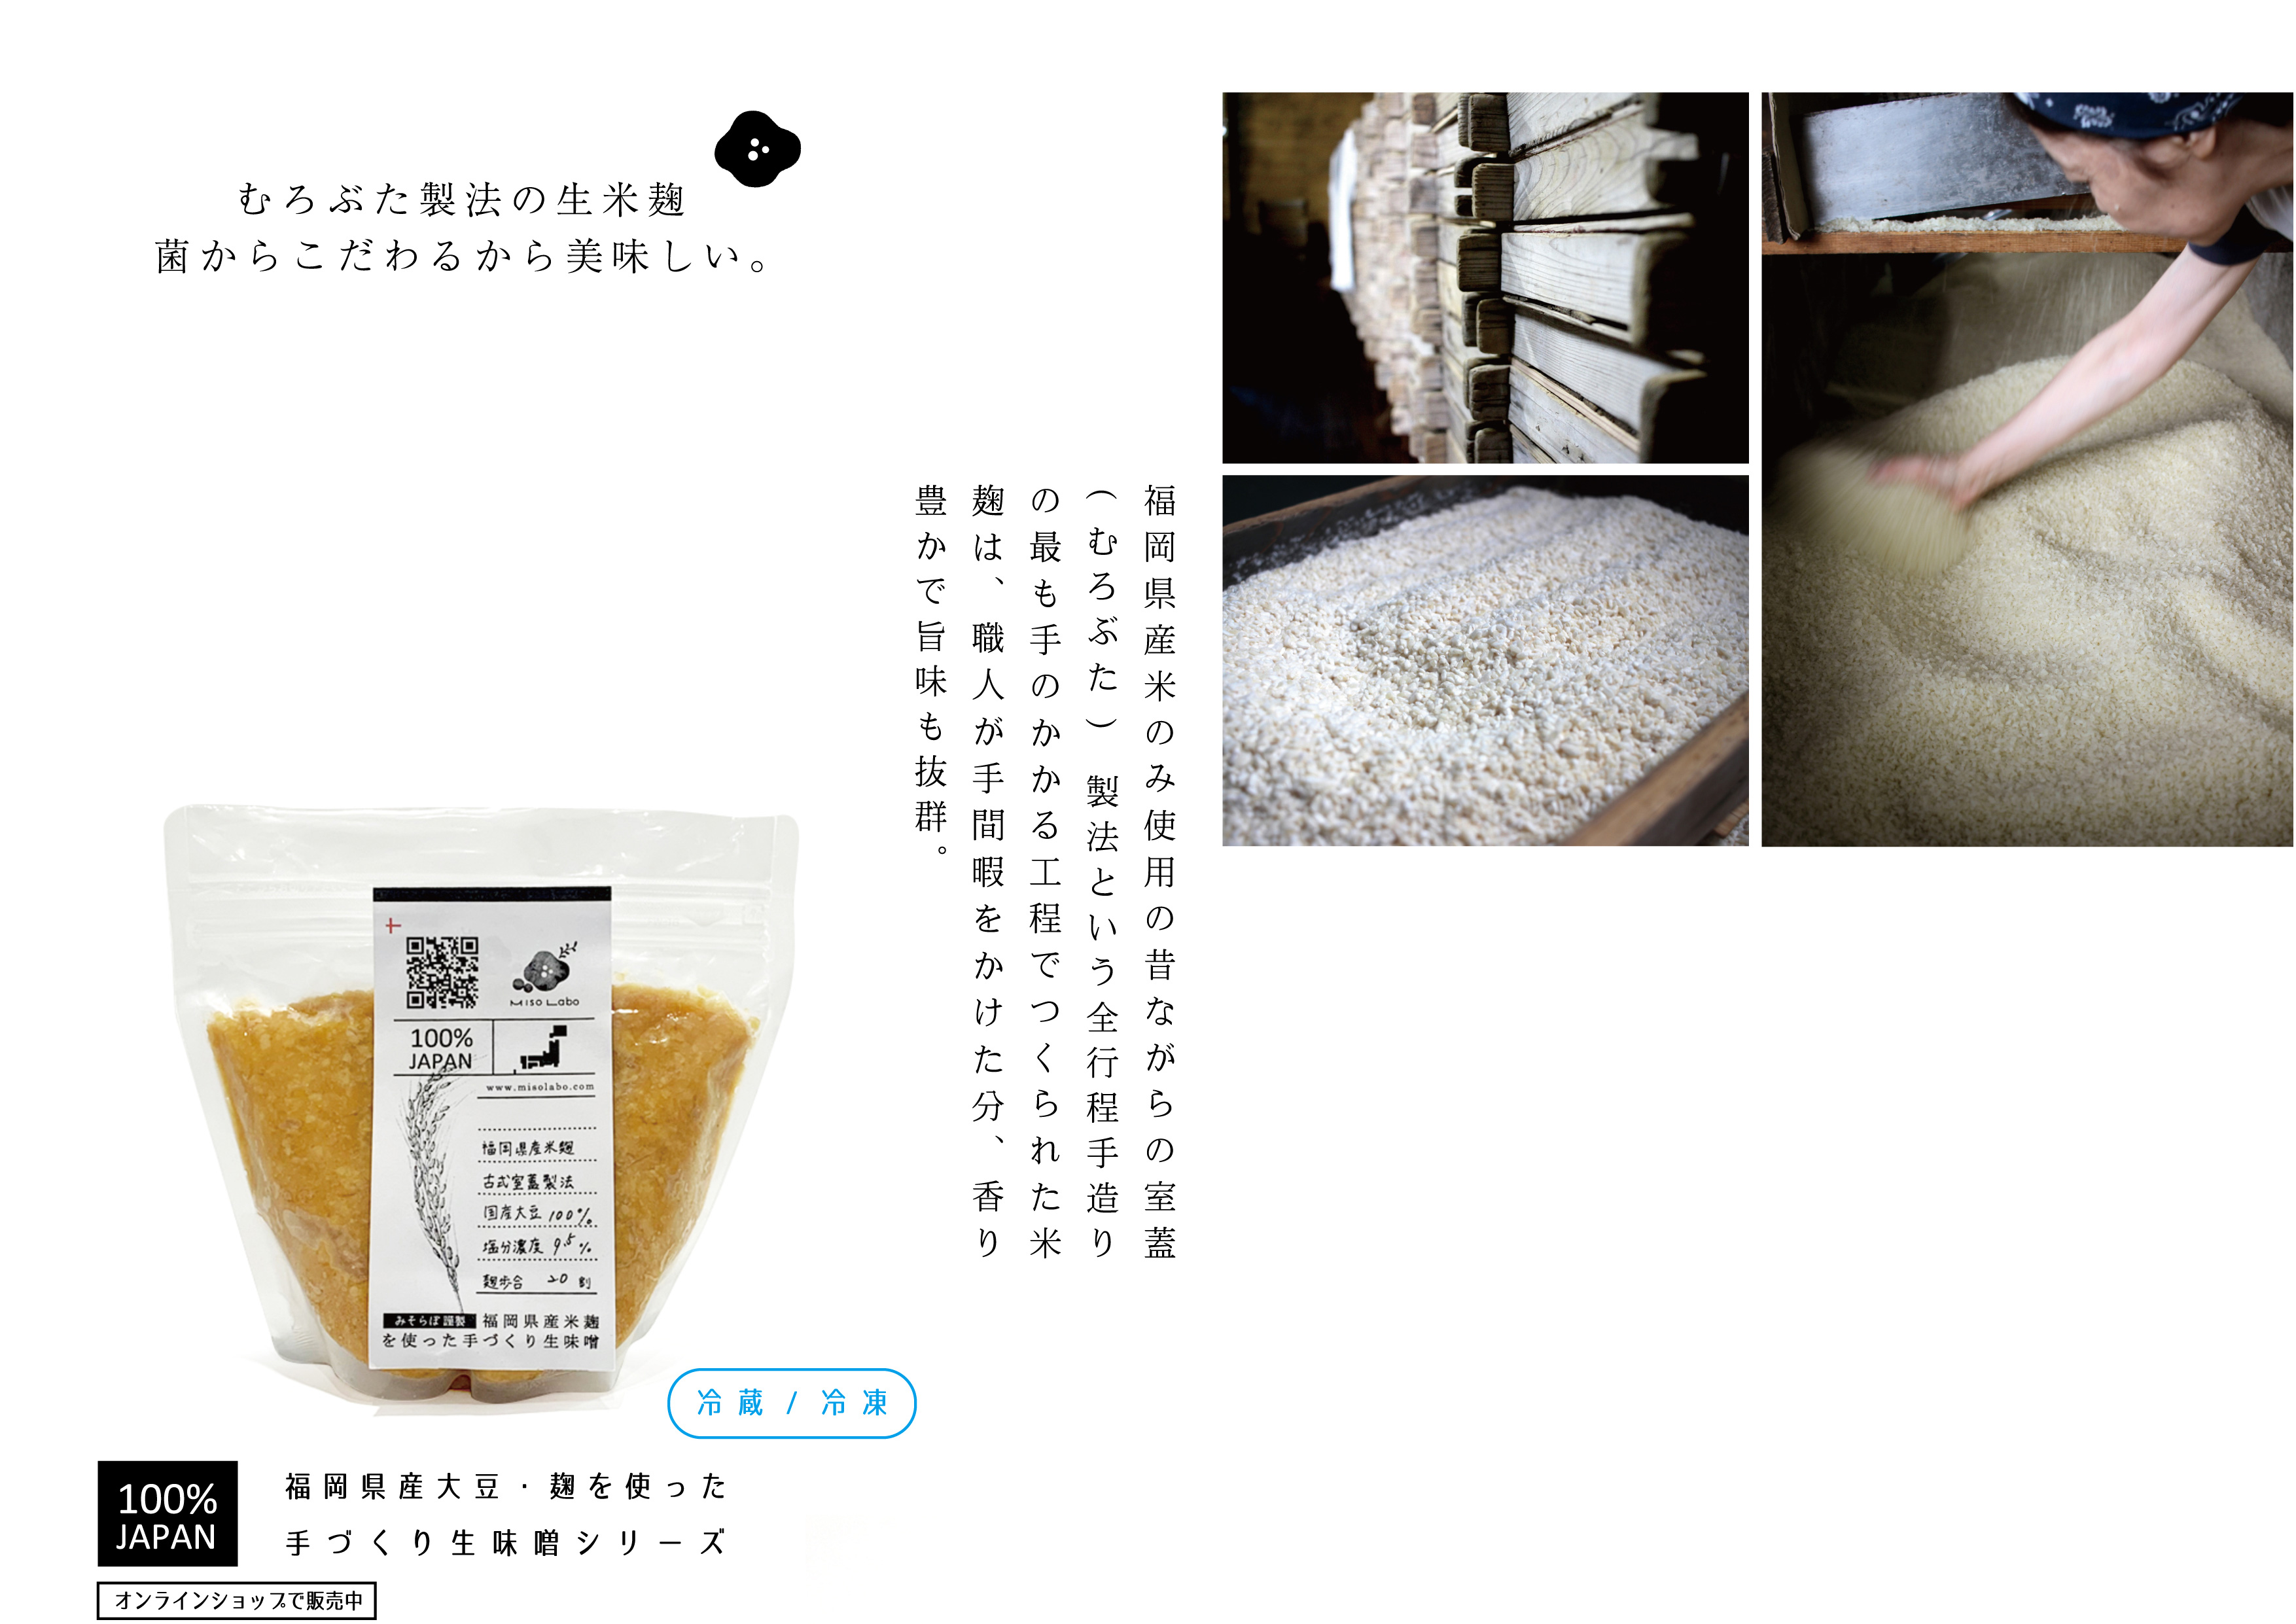 むろぶた製法の生米麹菌からこだわるから美味しい。